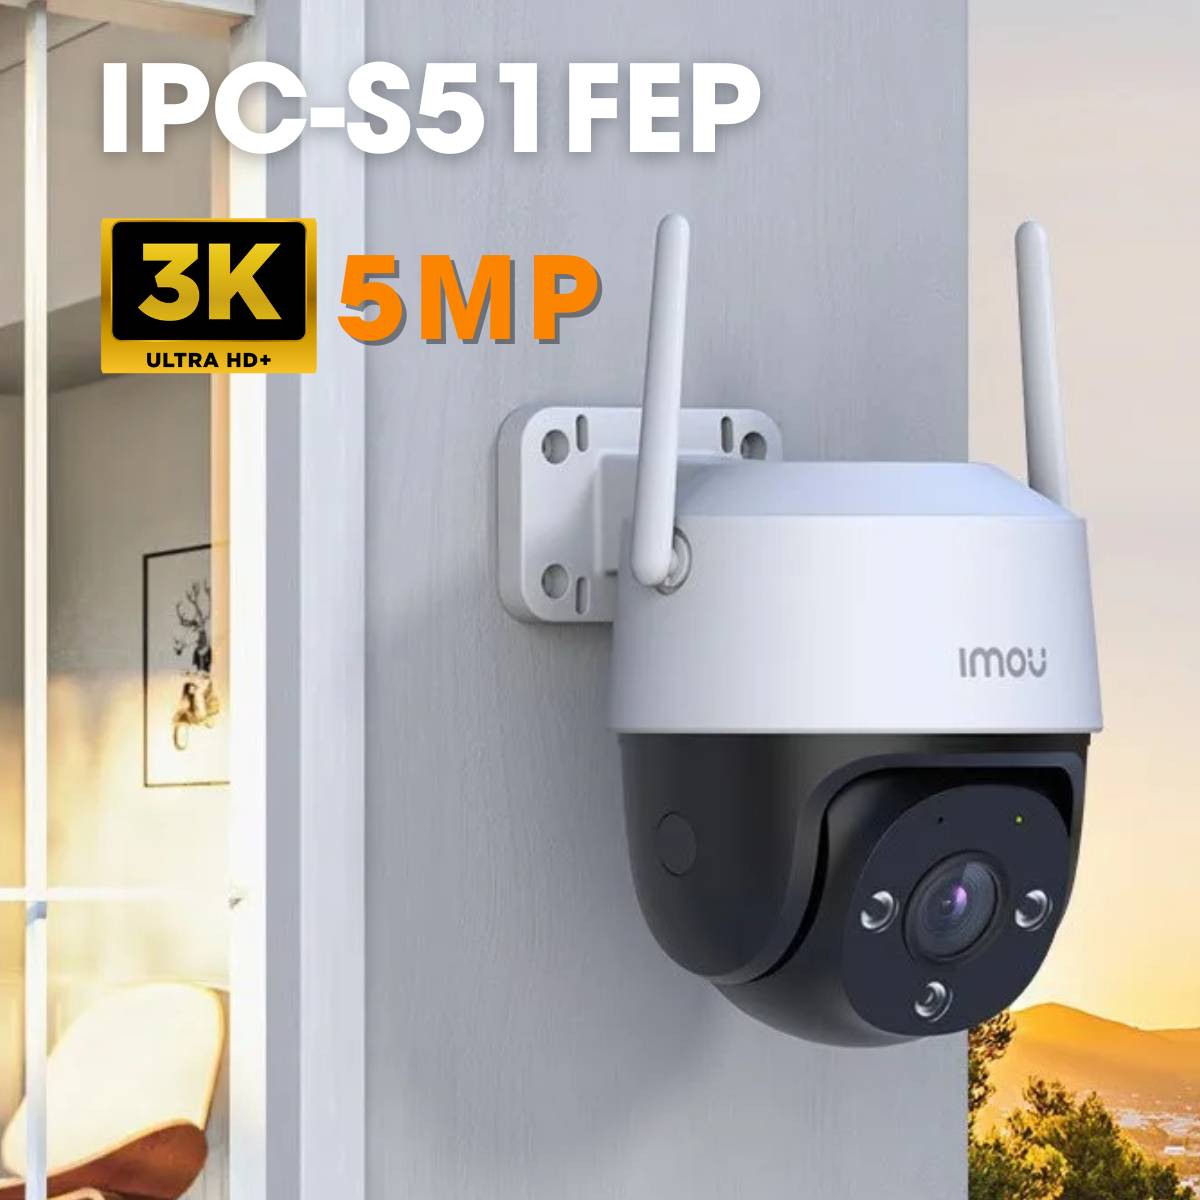 Camera Cruiser SE+ IMOU IPC-S51FEP 3K 5MP, xoay 360 độ, hồng ngoại ban đêm 30m, đàm thoại 2 chiều, phát hiện chuyển động bằng AI